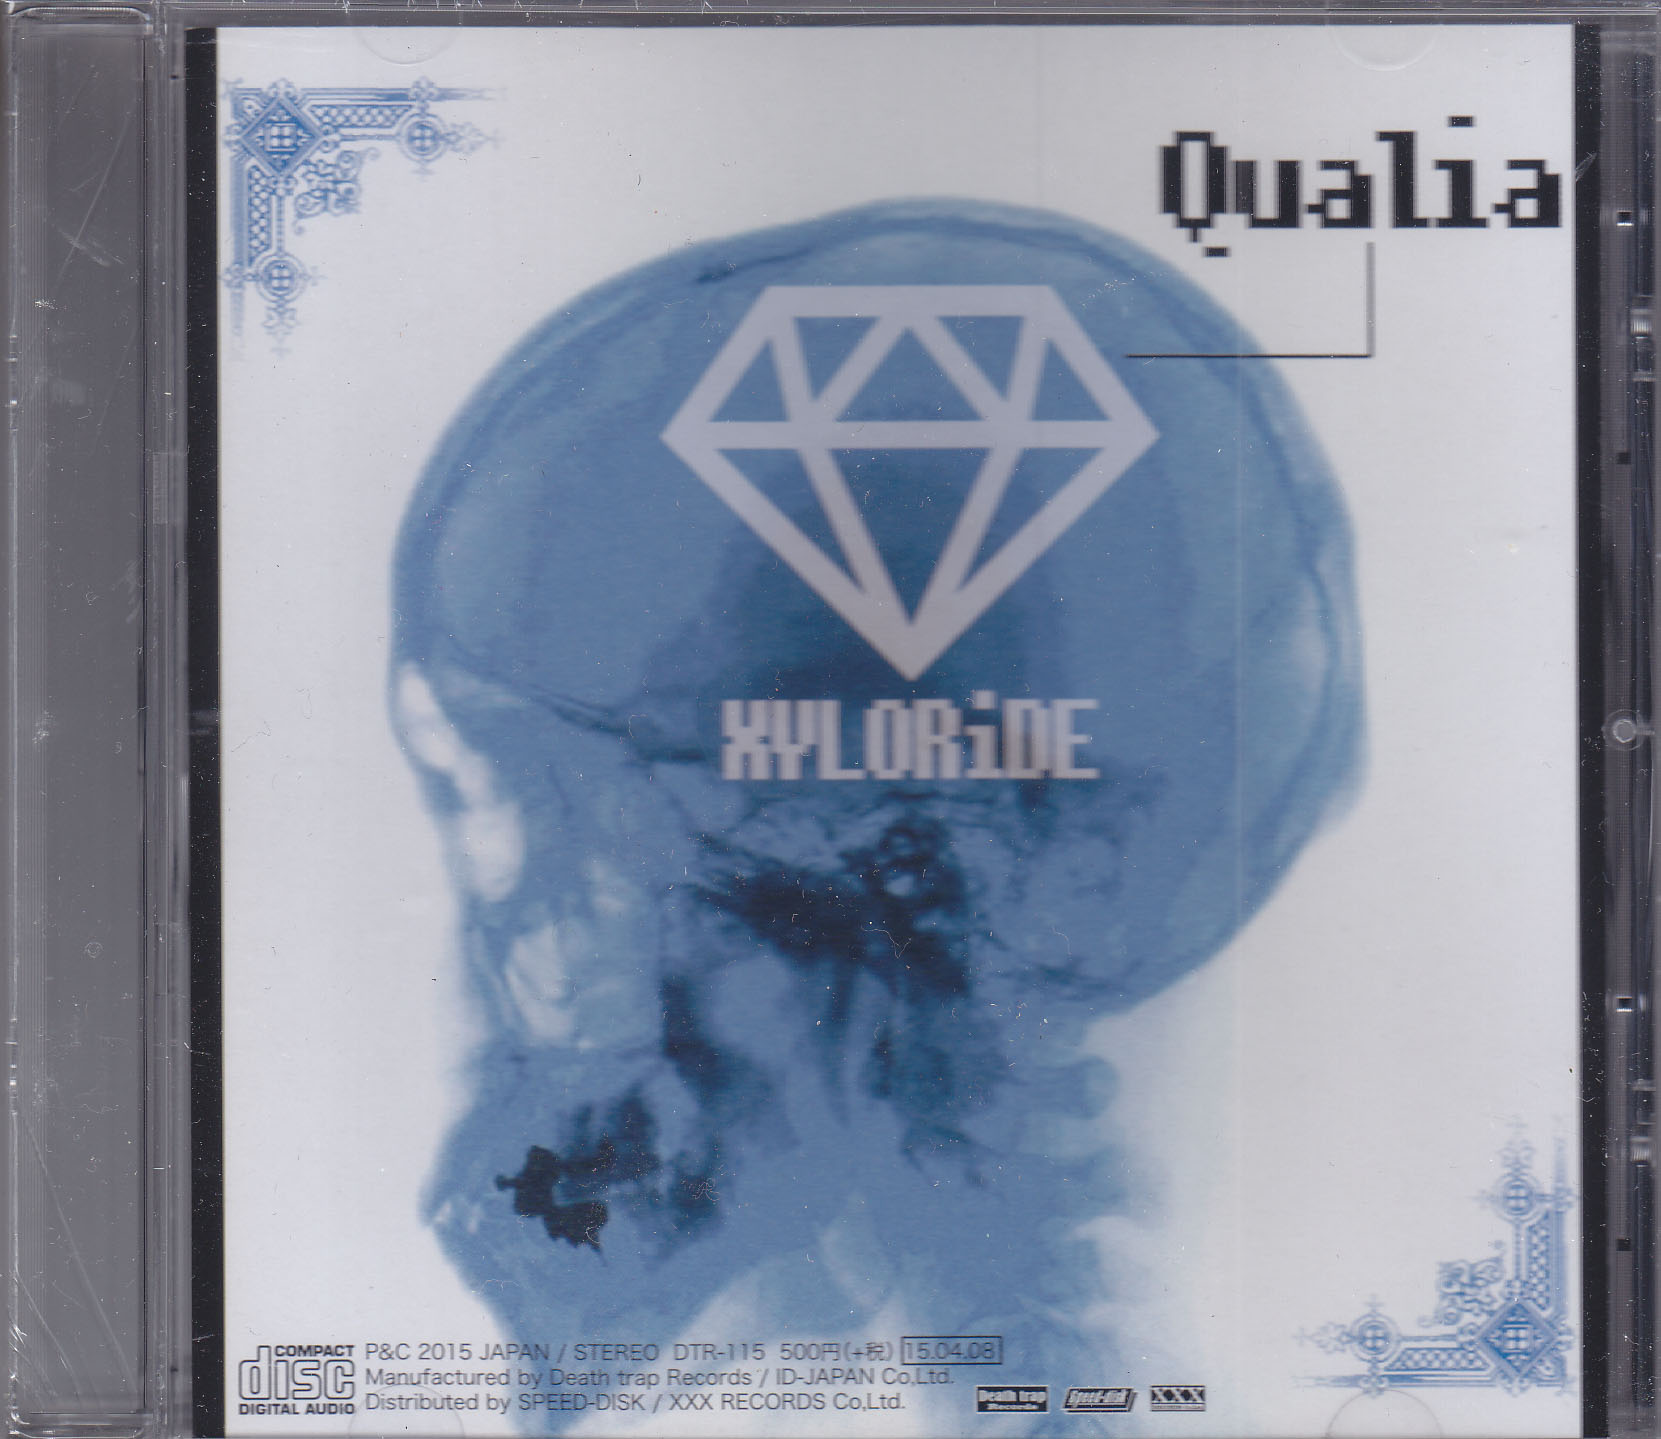 ザイロライド の CD Qualia